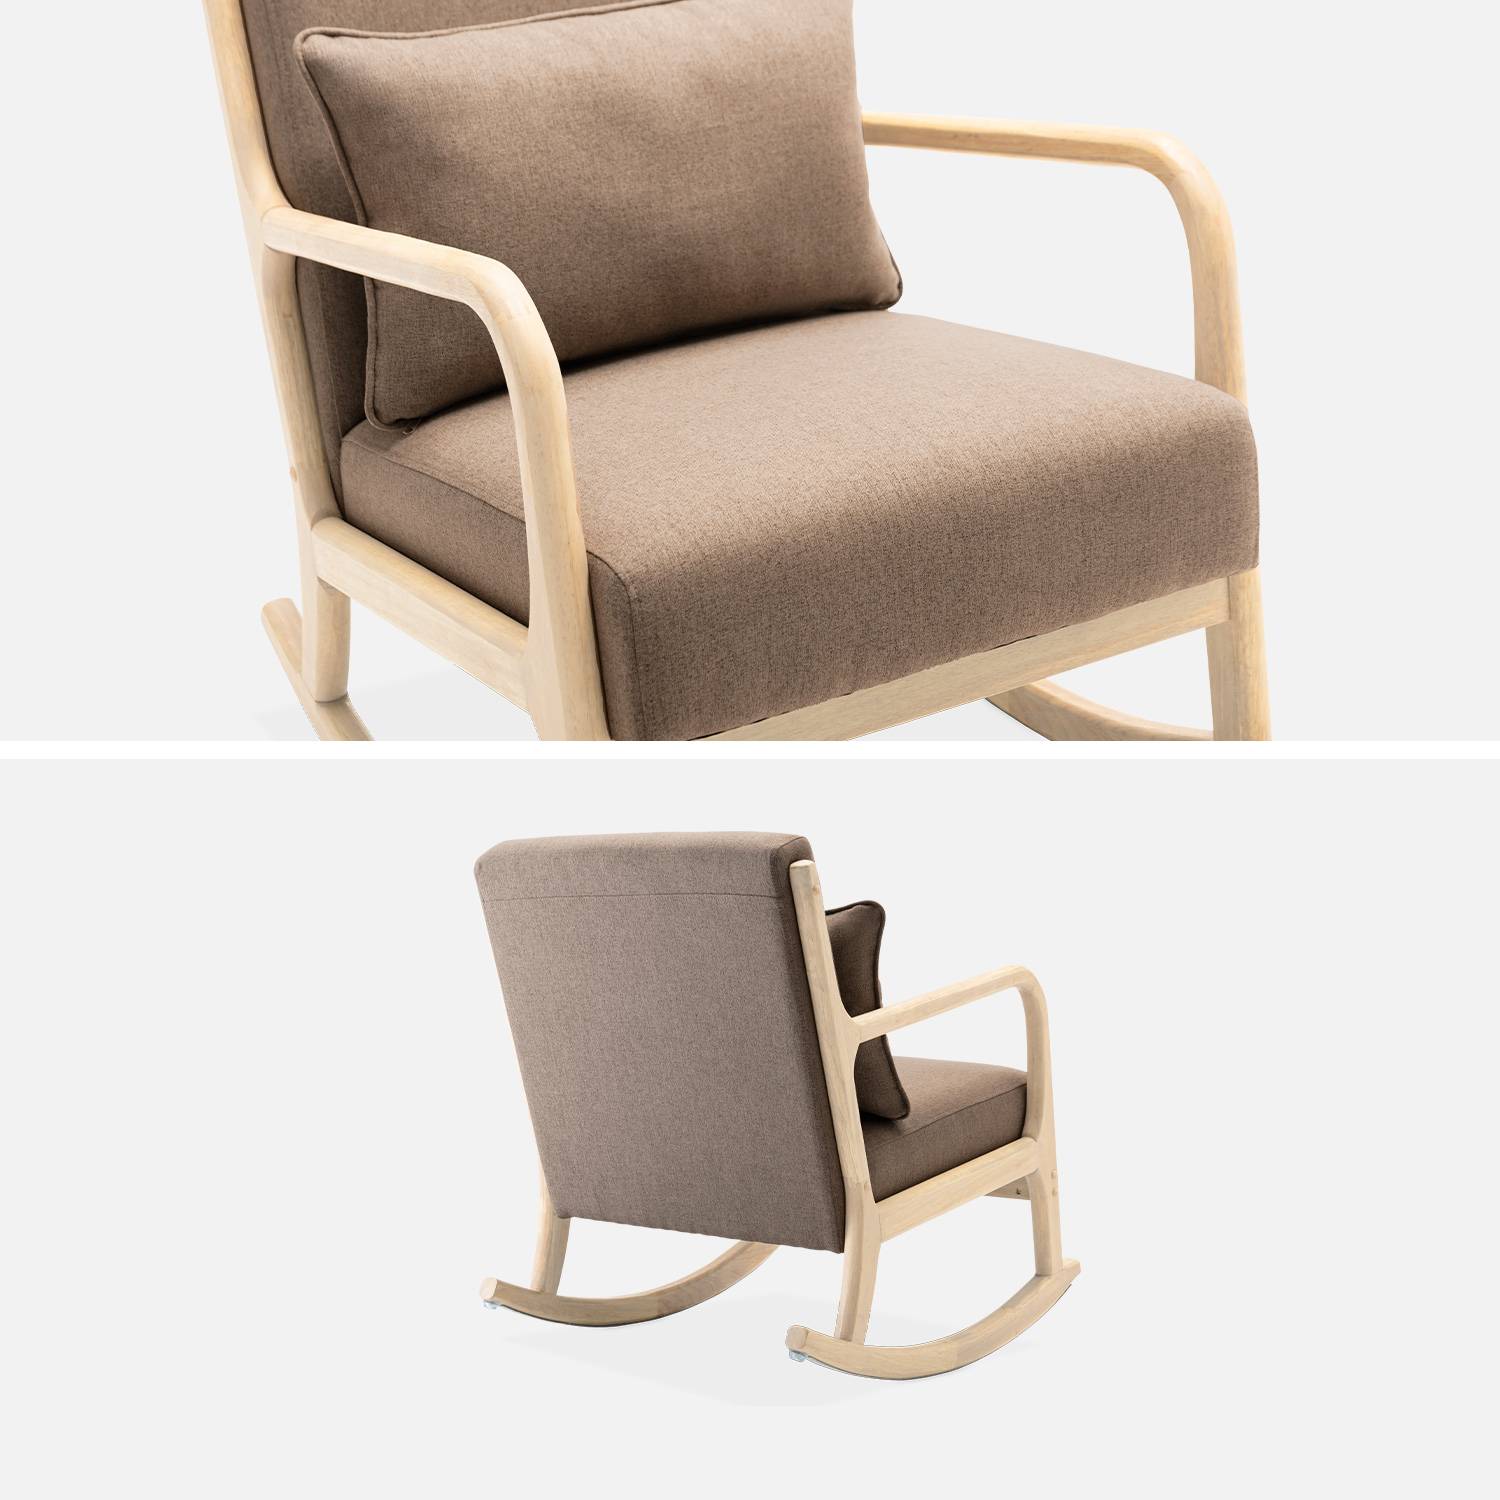 Fauteuil à bascule marron design en bois et tissu, 1 place, rocking chair scandinave Photo3